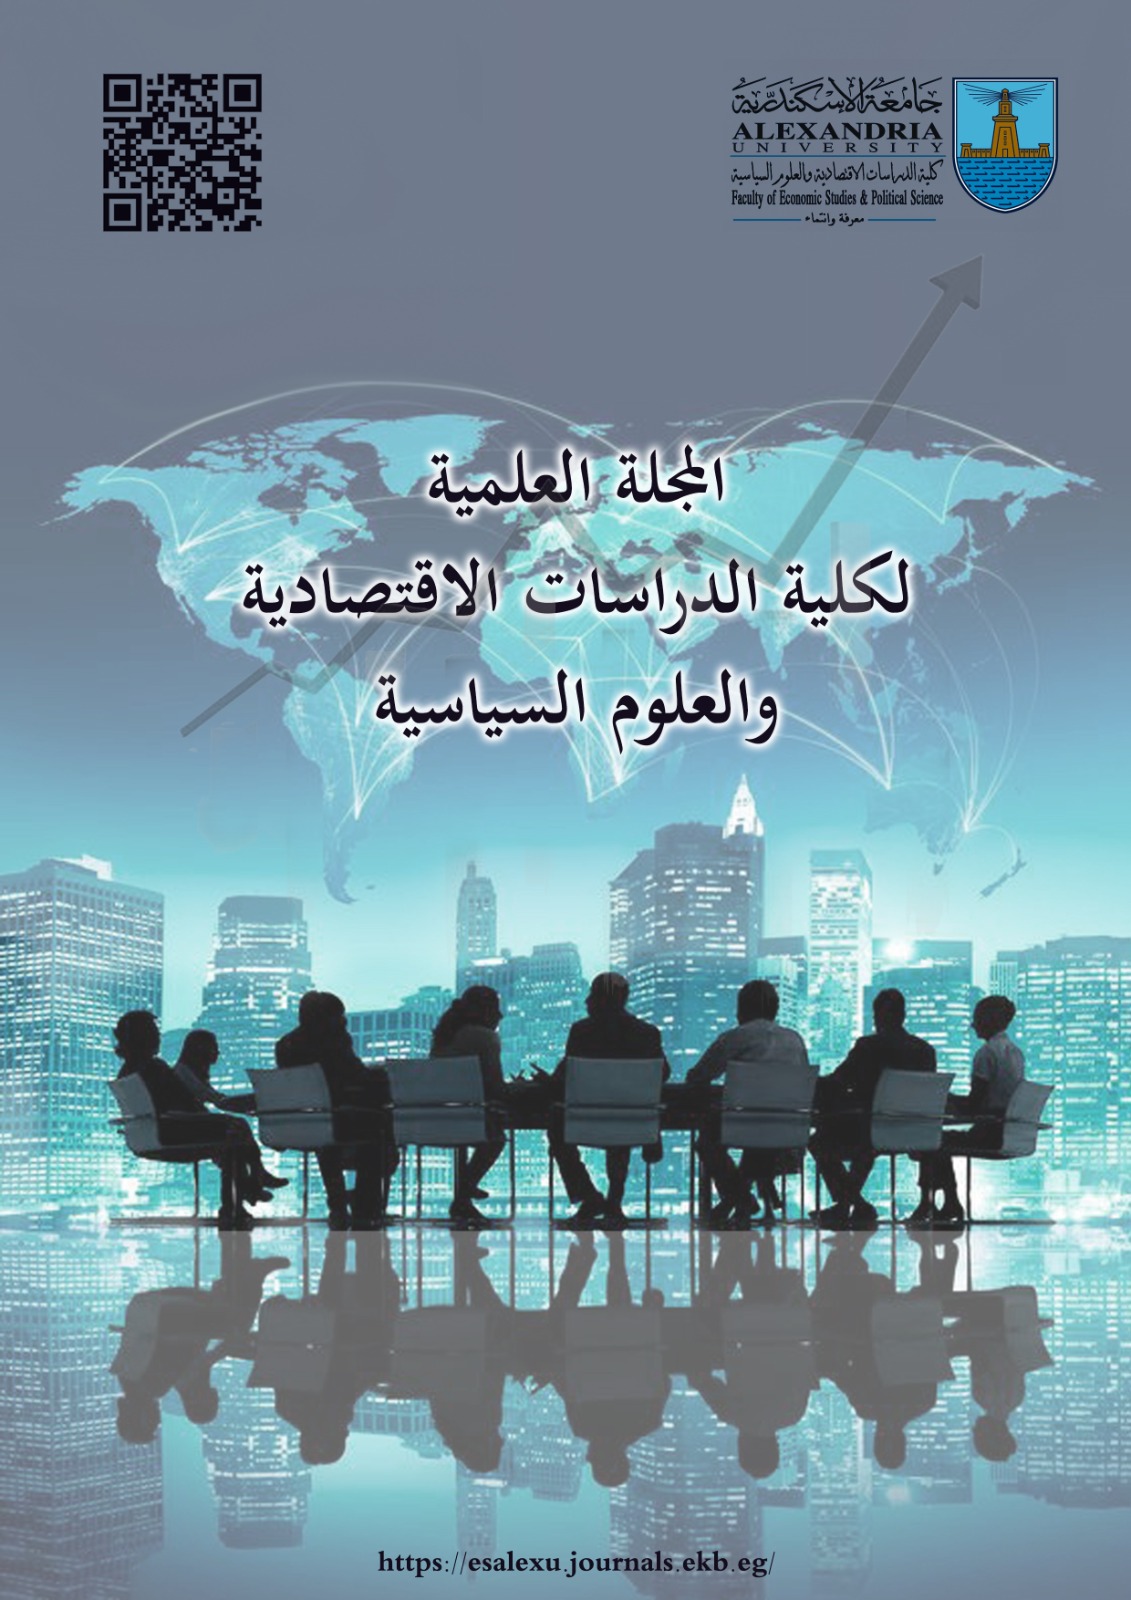 المجلة العلمية لکلية الدراسات الإقتصادية و العلوم السياسية